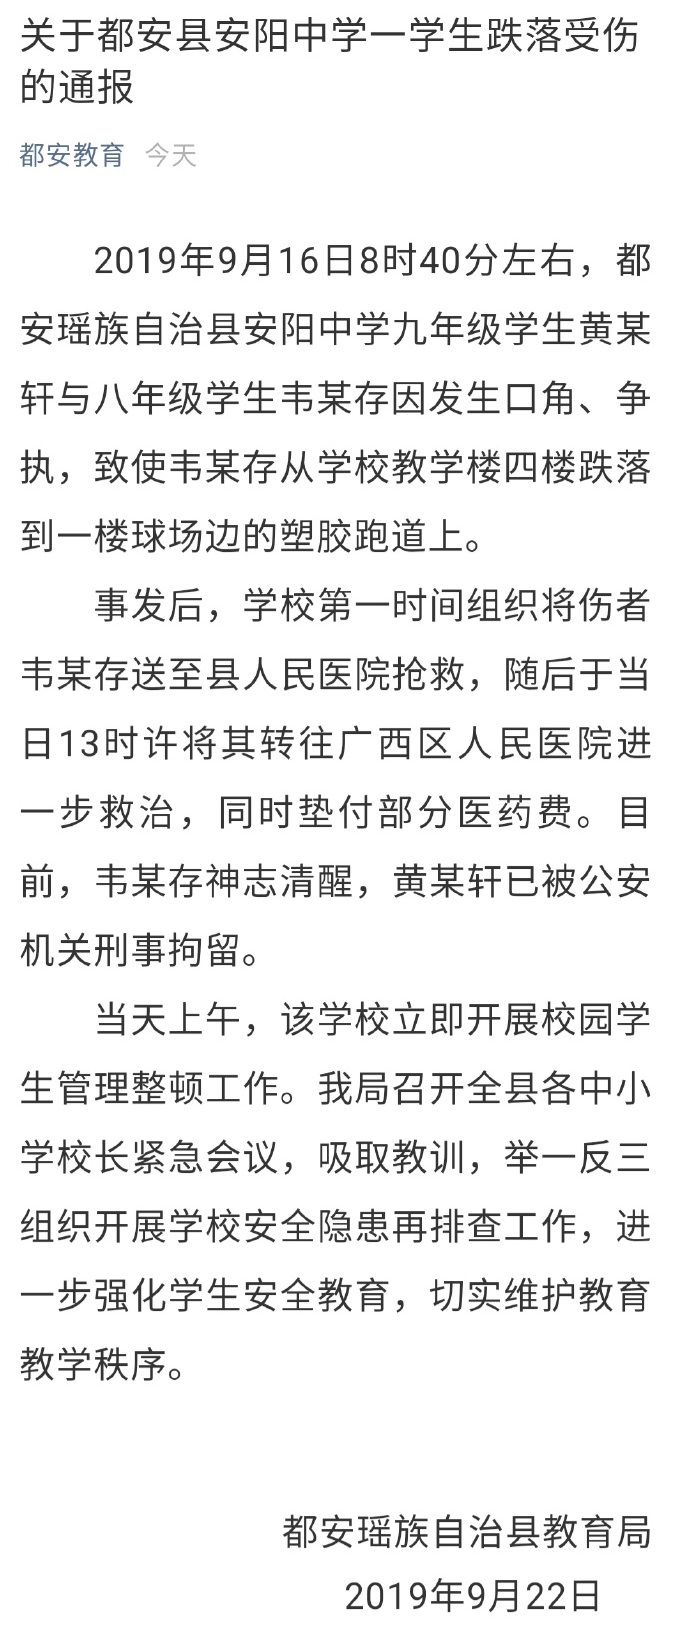 广西中学生将同学扔下4楼 肇事者母亲:儿子常被欺负